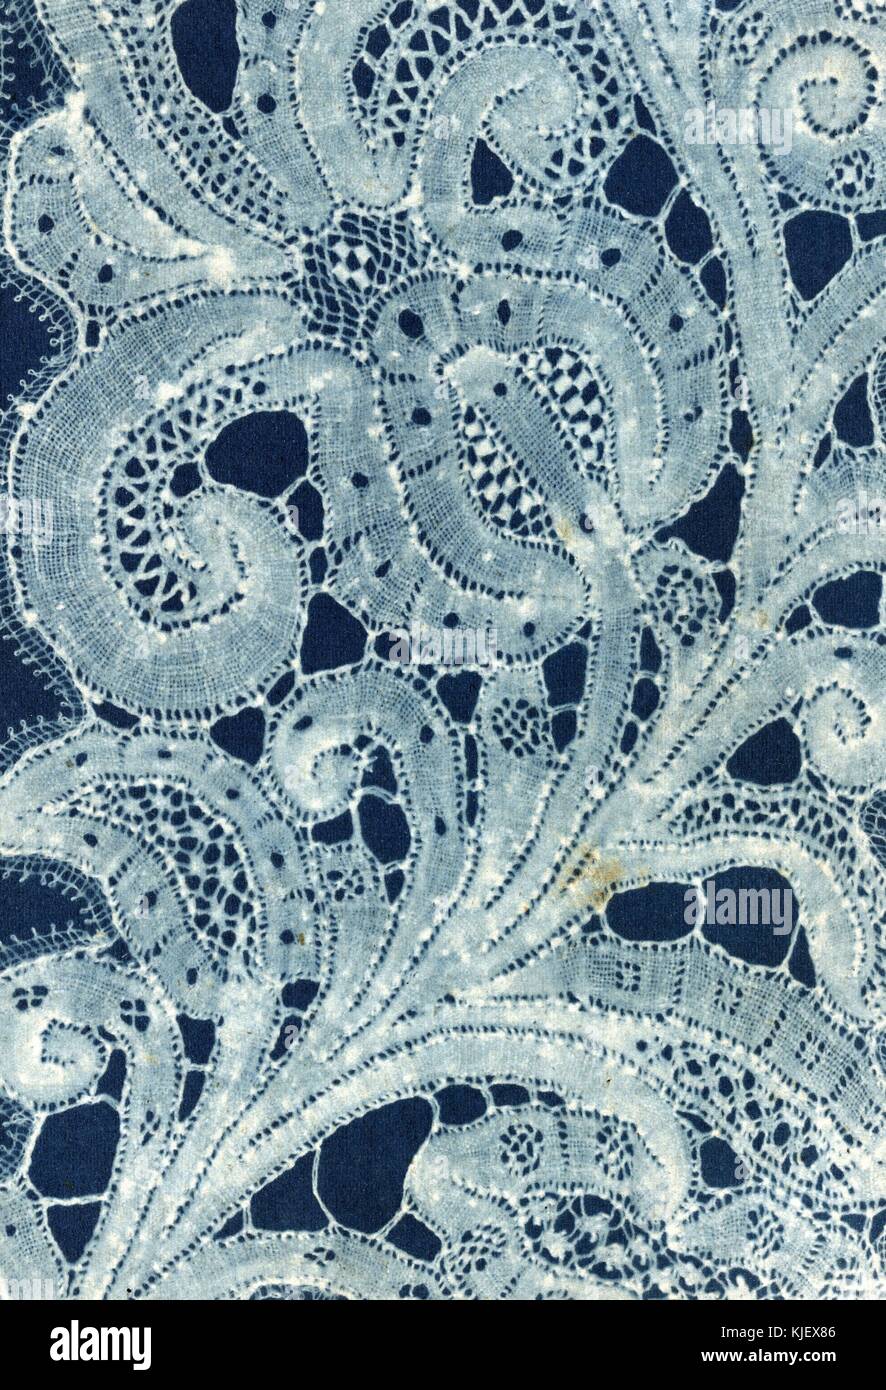 Eine Nahaufnahme Foto von Geflecht und Gewinde Spitze vor einem blauen Hintergrund, die Nähe des Foto erforderlich ist eine detaillierte Ansicht der komplizierten Nadel Arbeit erforderlich, um das Stück, 1869. Von der New York Public Library. Stockfoto